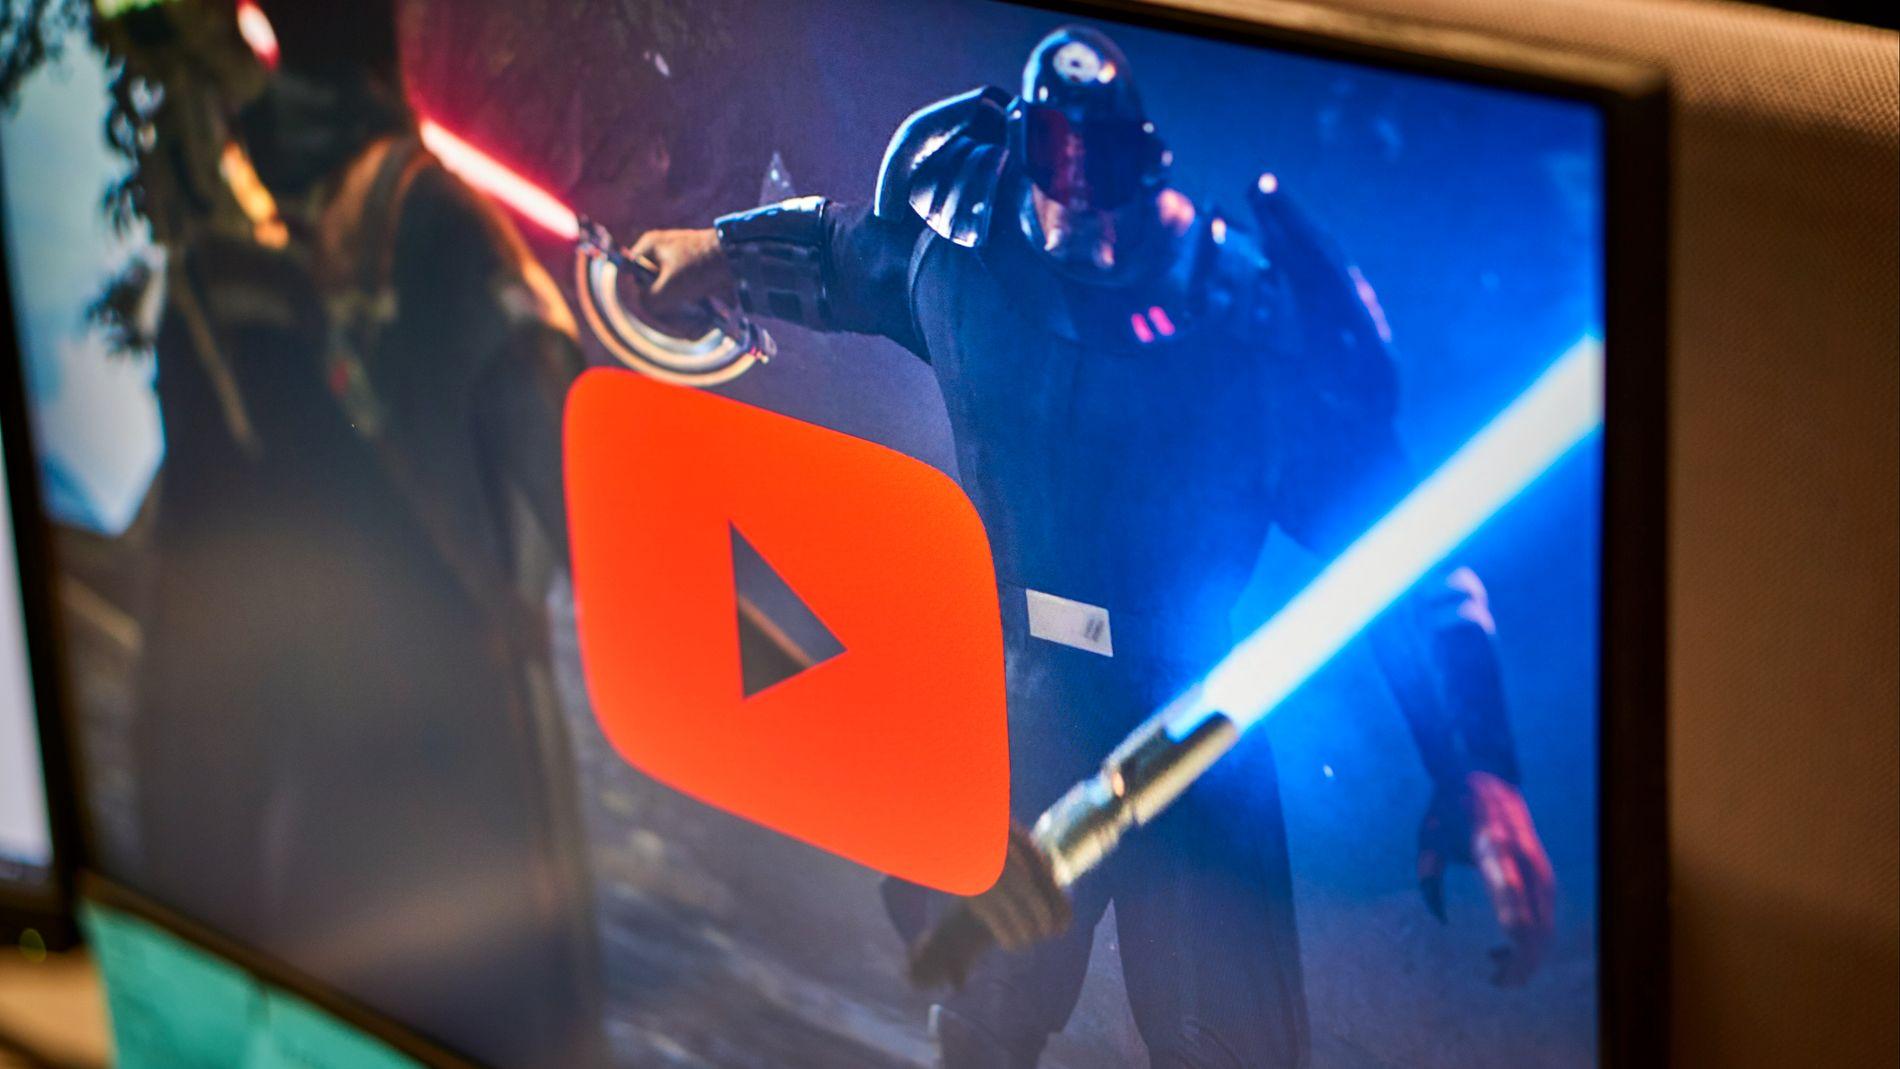 YouTube skrur ned strømmekvaliteten etter ønske fra EU